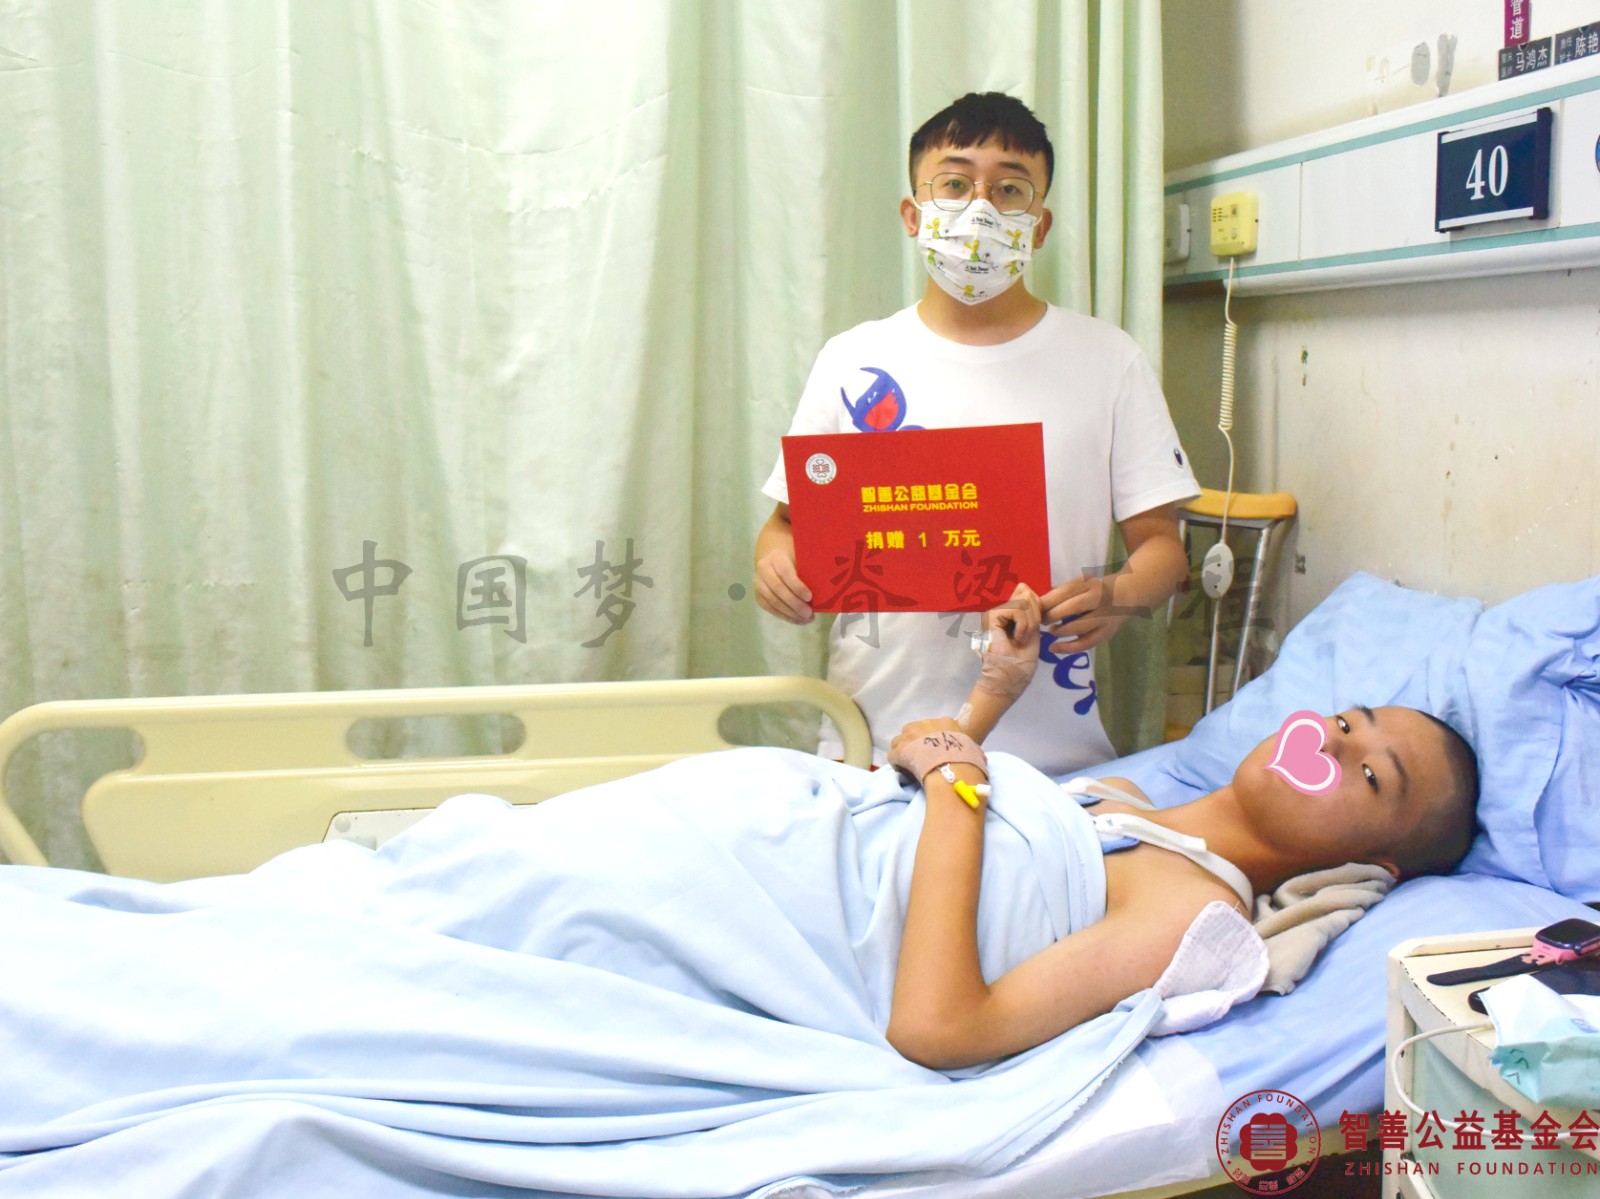 83 在郑州市骨科医院手术的河南南阳新野县患者小聂获智善公益基金会捐赠的1万元.jpg